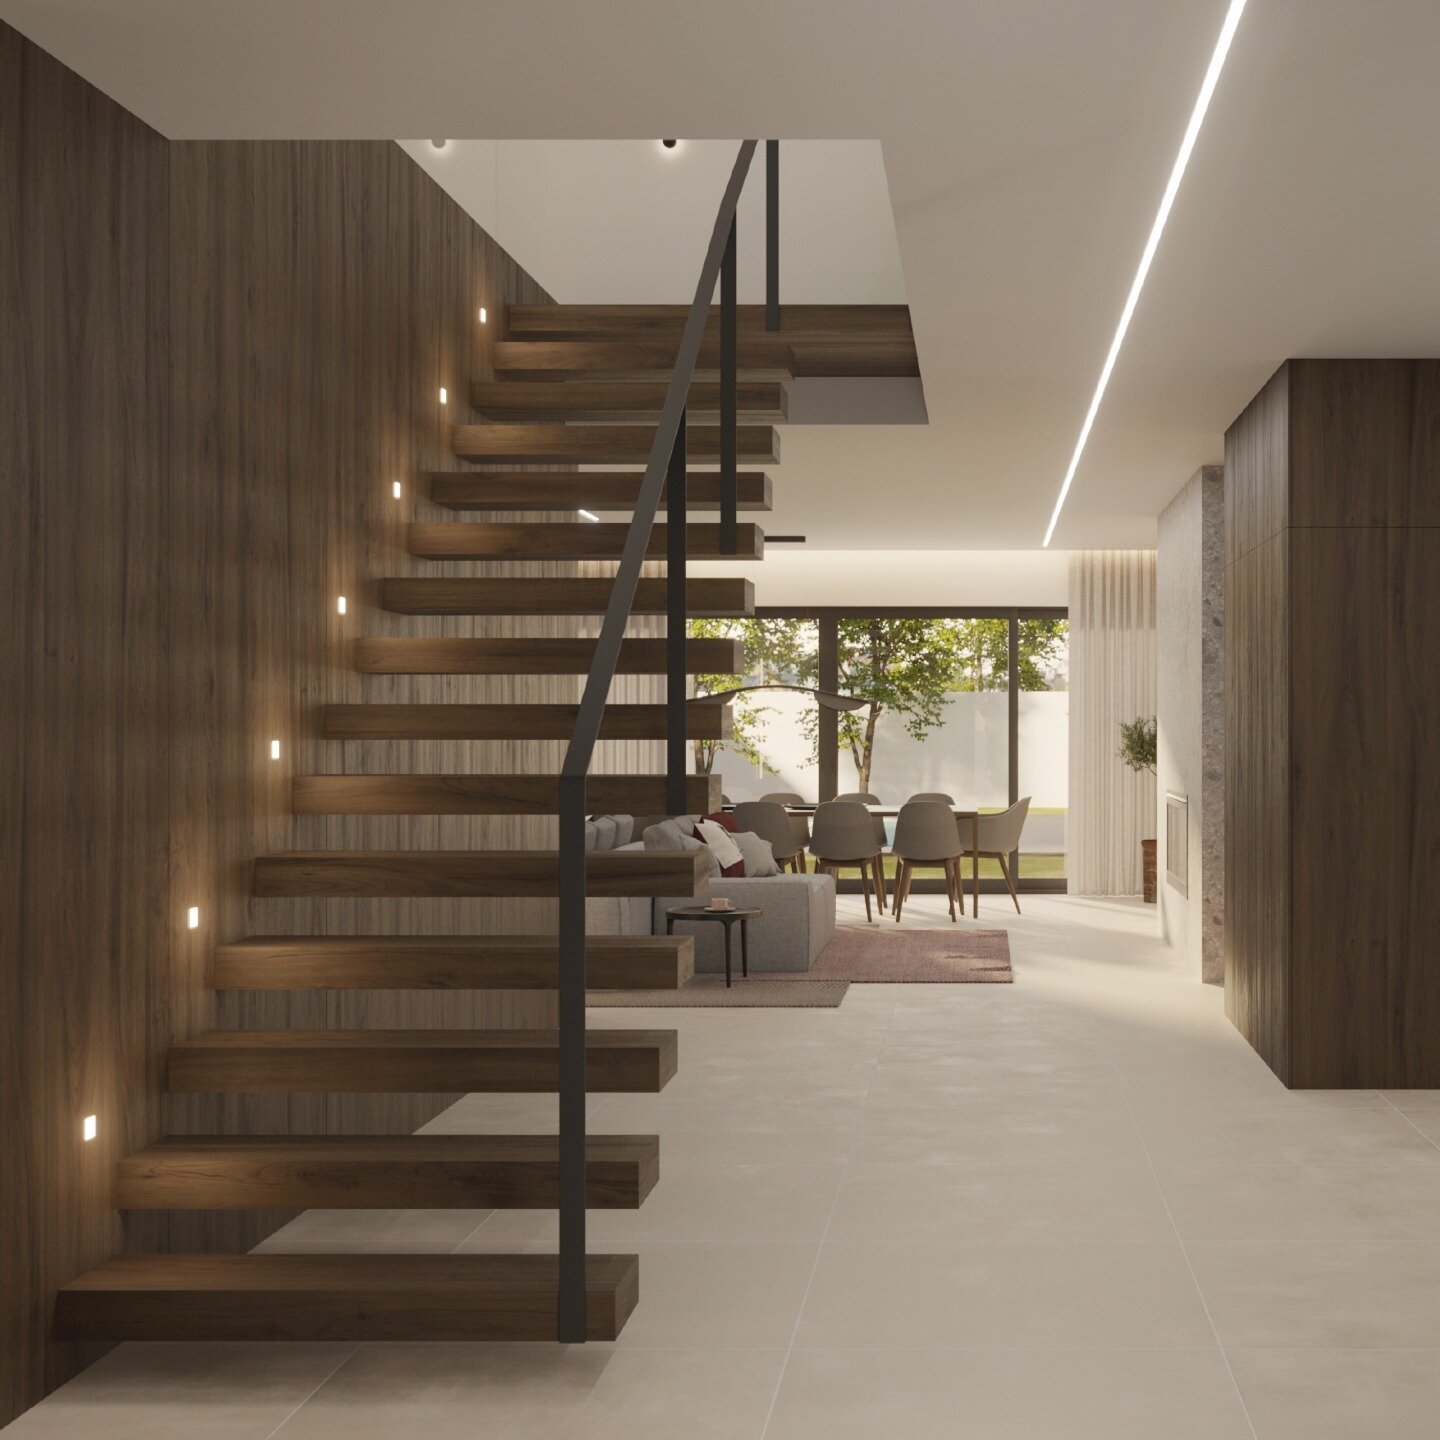 Uma escadaria moderna e elegante pode ser o destaque de uma casa contempor&acirc;nea. Com materiais sofisticados e um design minimal, a escadaria pode se tornar um elemento central da decora&ccedil;&atilde;o. #arkhastudio #thenewperspective #designde